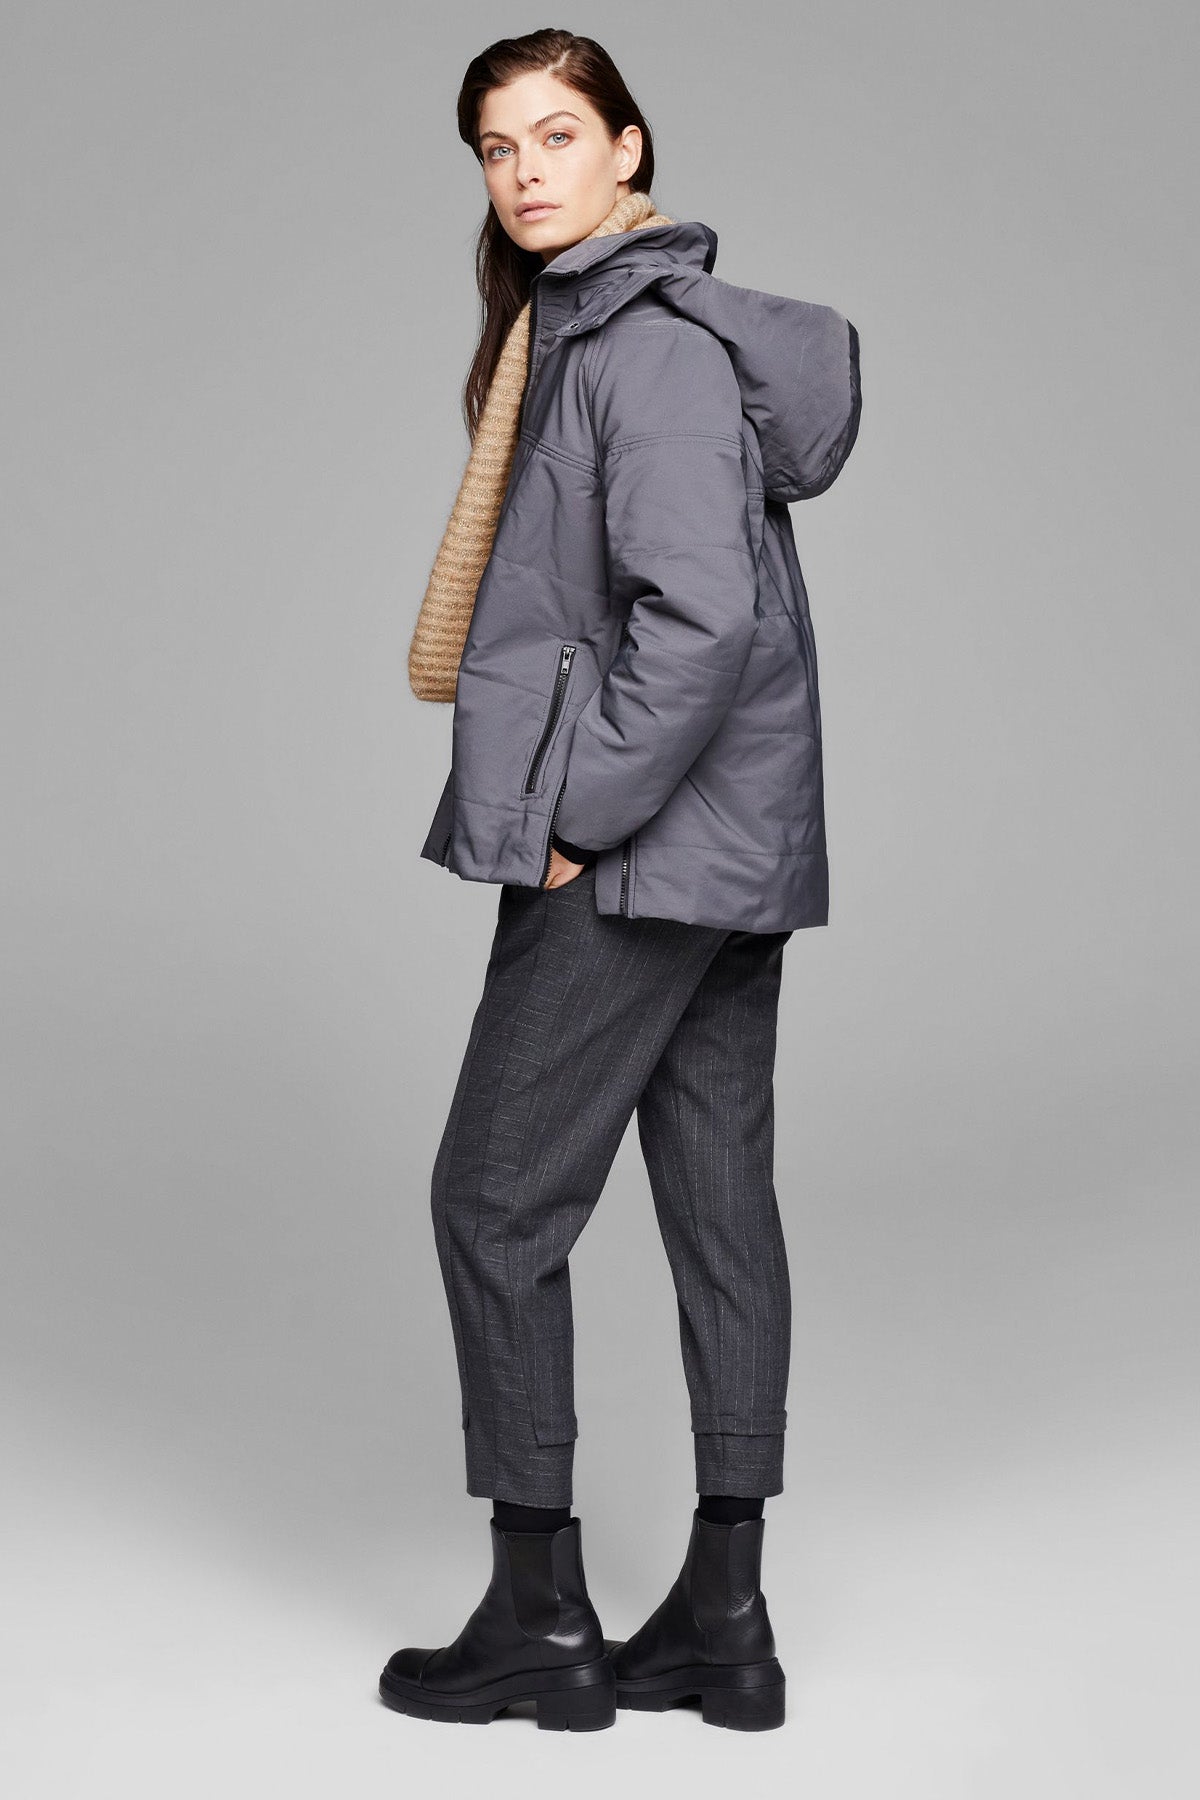 Sarah Pacini Çizgili Pantolon-Libas Trendy Fashion Store